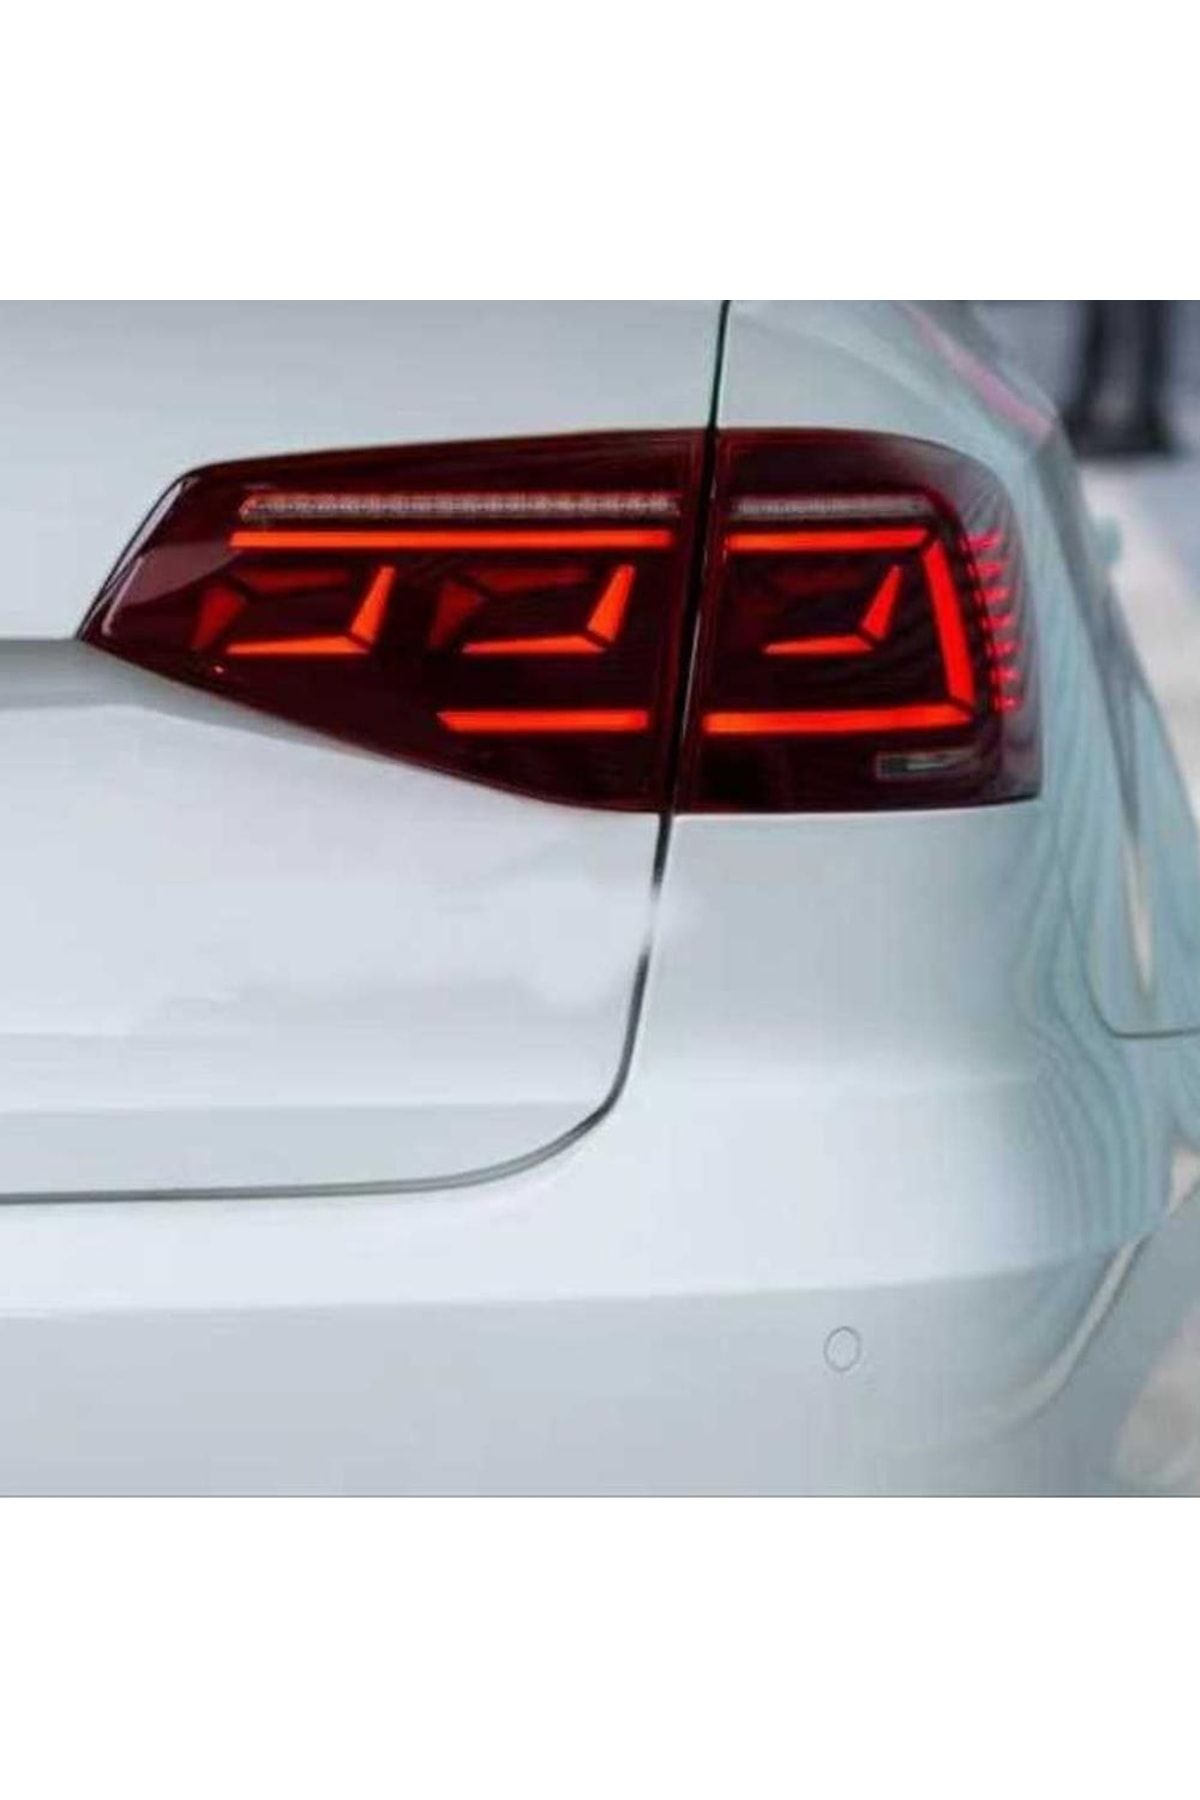 OLED GARAJ Volkswagen Jetta İçin Uyumlu Led Stop 2015+